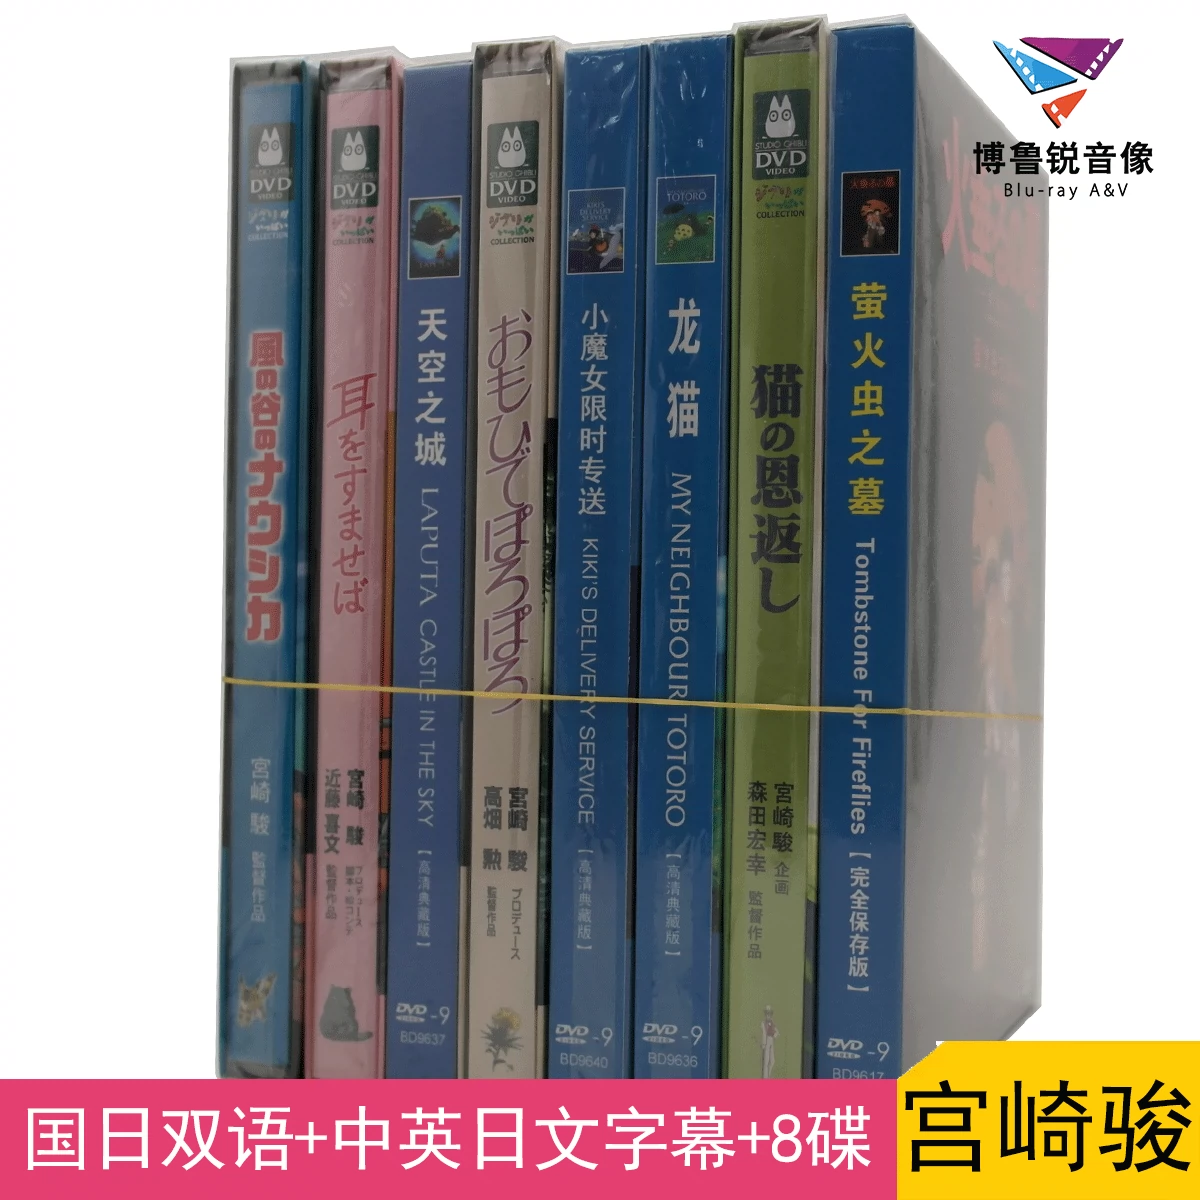 现货|林家铺子全新正版国产DVD电影光碟片经典怀旧社会-Taobao